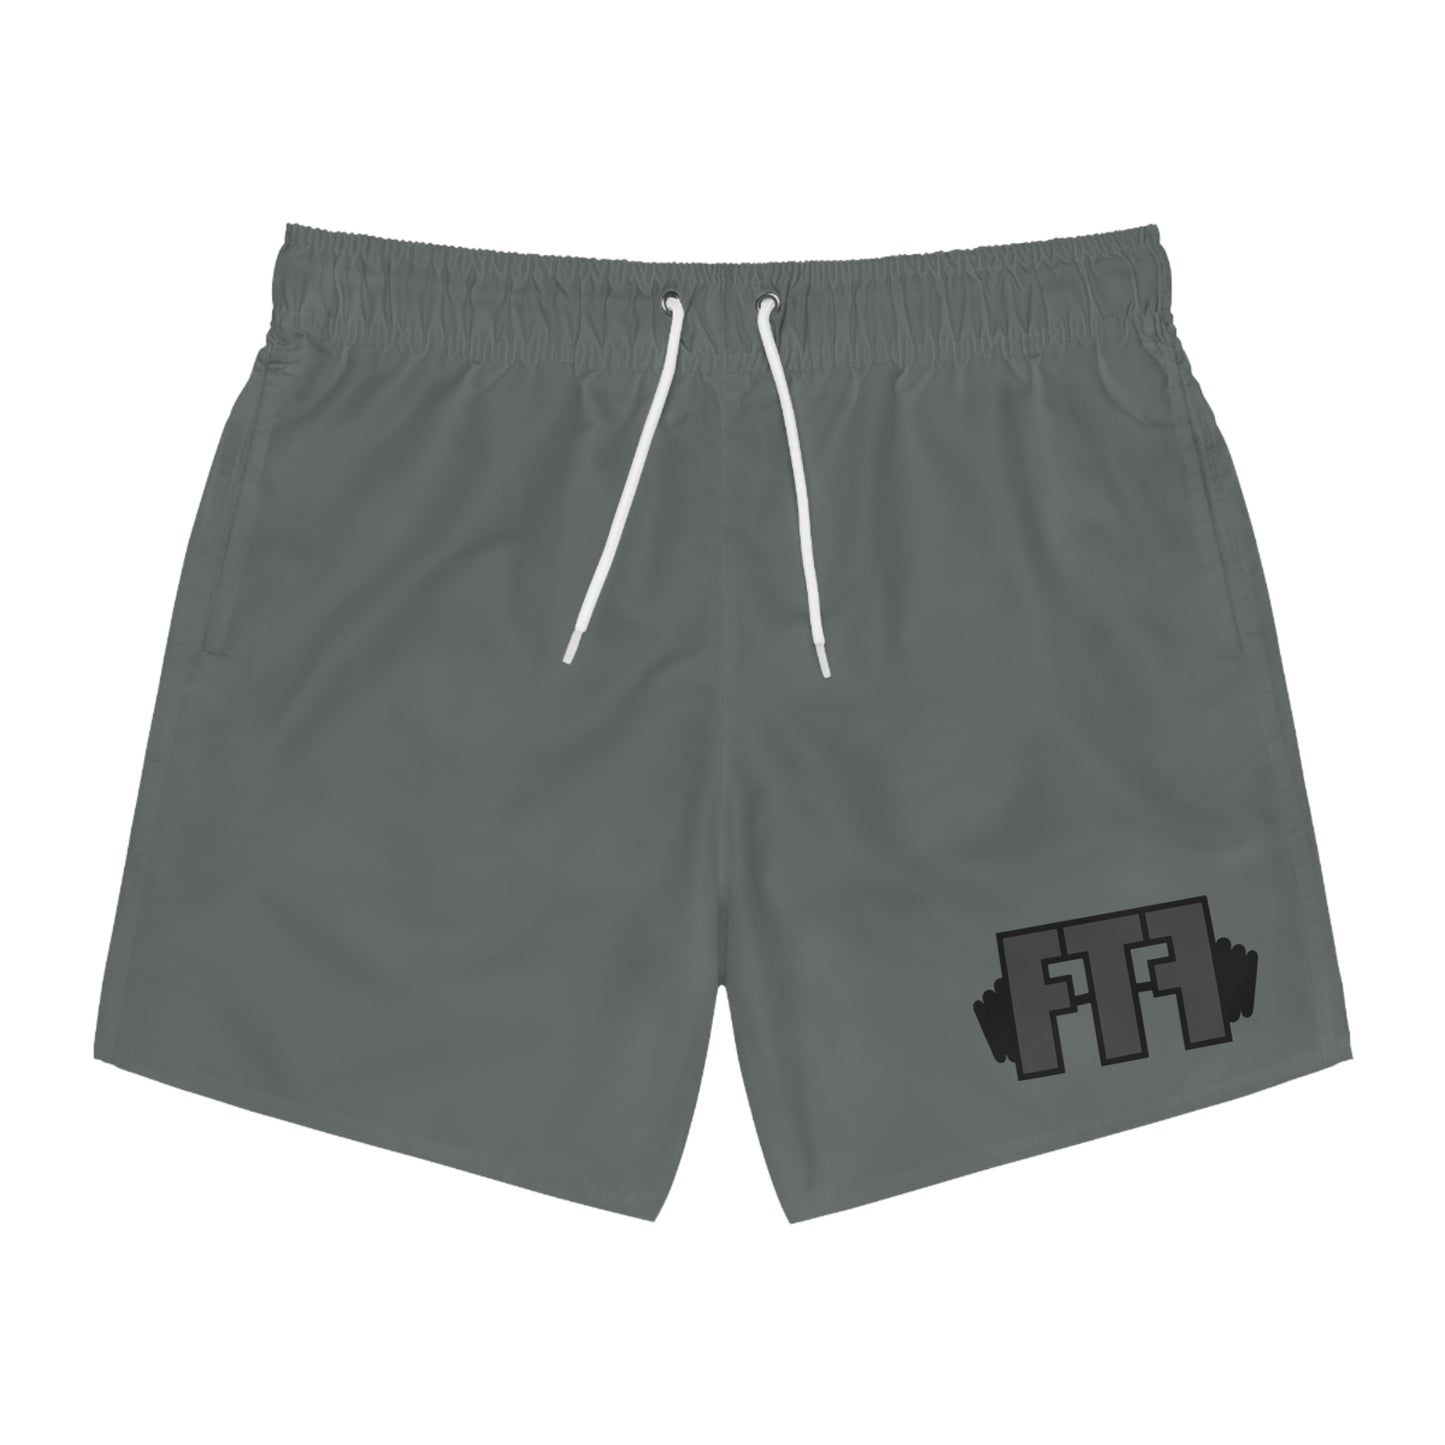 FTF Shorts Grey/Grey